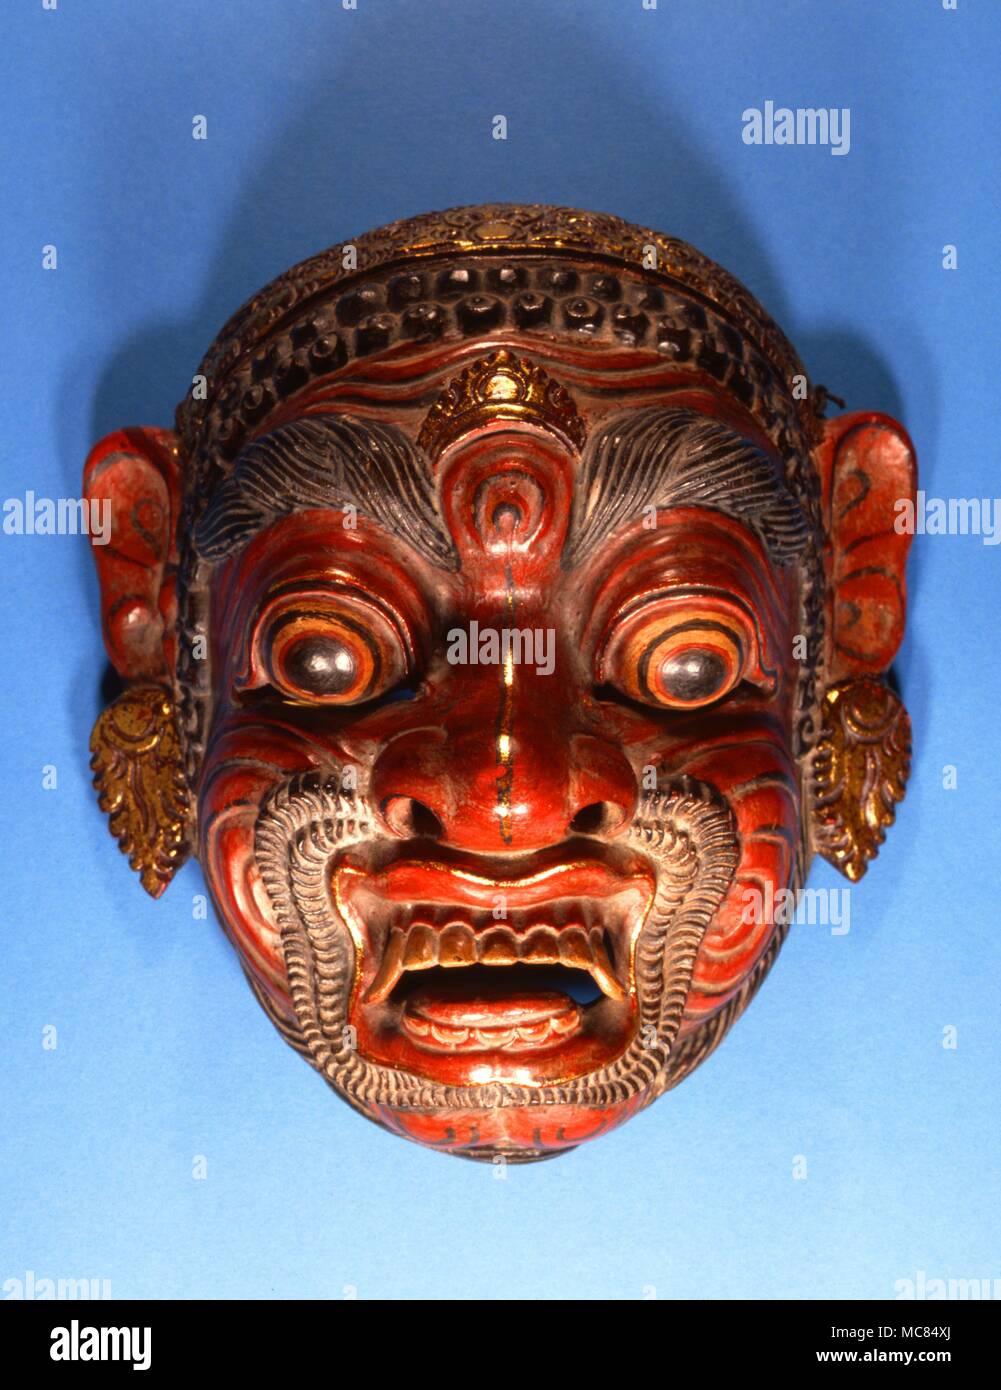 Maschera demoniaca, scolpito in legno, e probabilmente dallo Sri Lanka. Forse realizzato per il turismo nel diciannovesimo secolo. Foto Stock